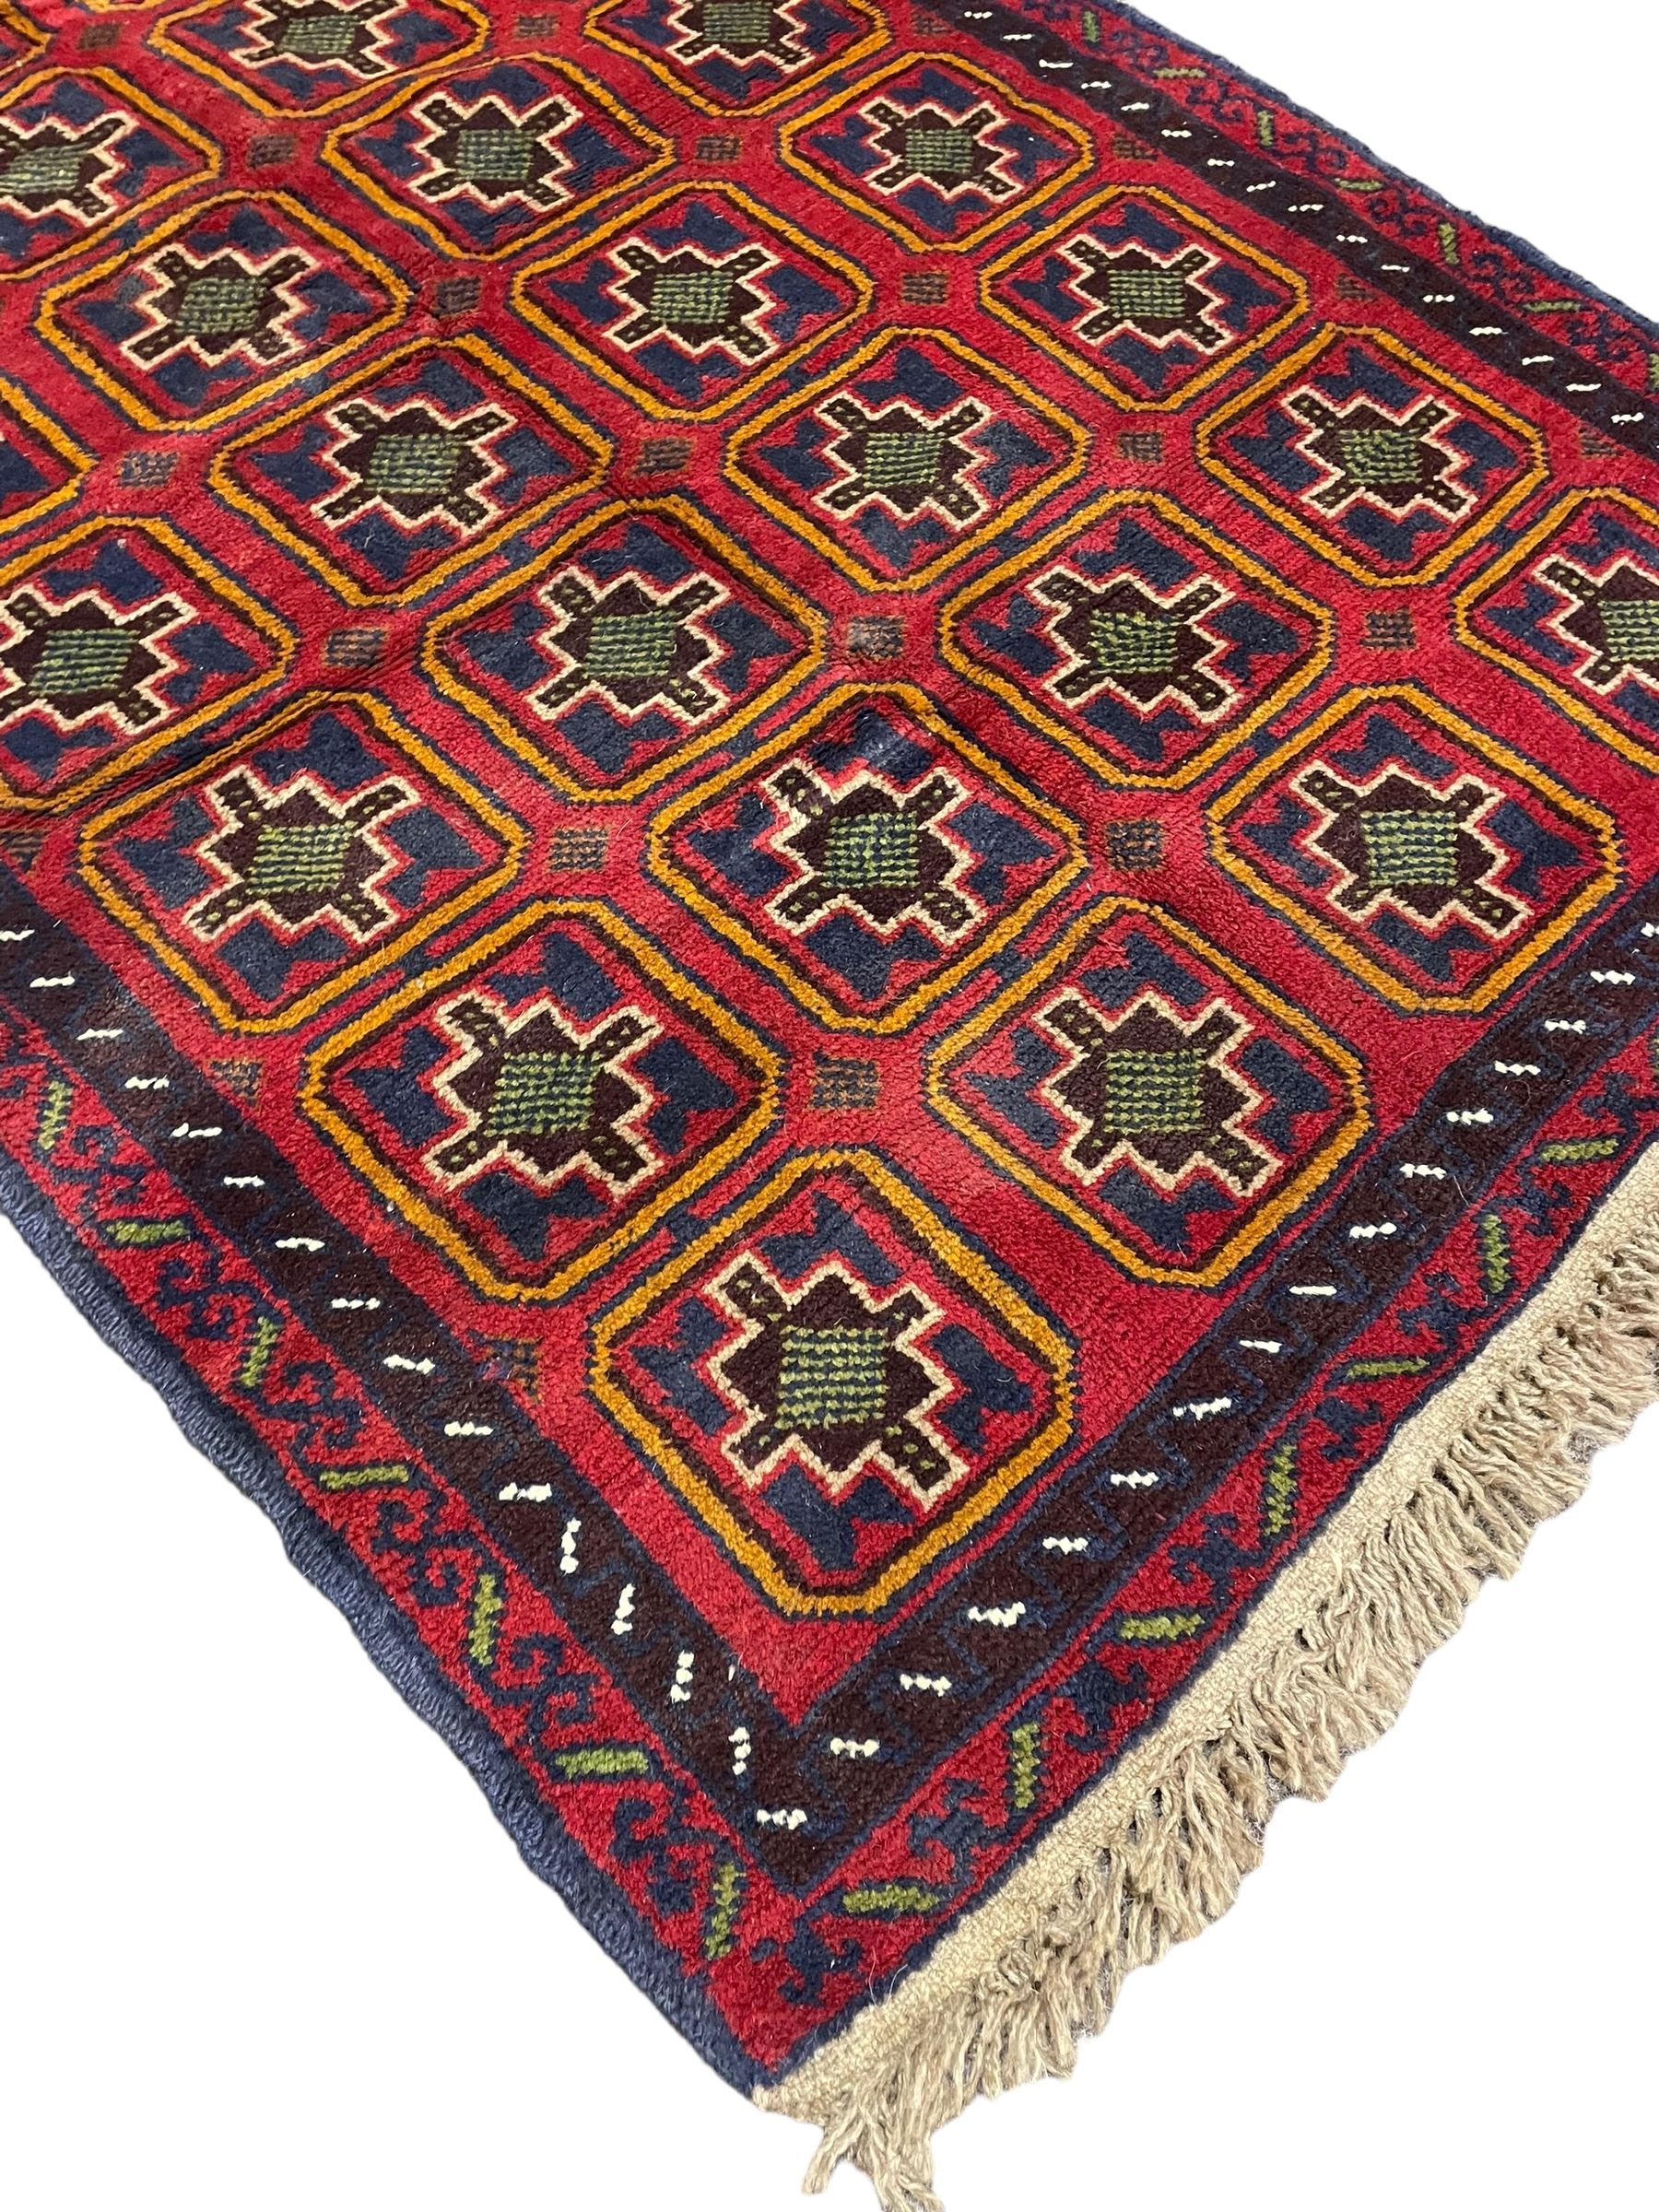 Baluchi crimson ground rug - Image 5 of 6